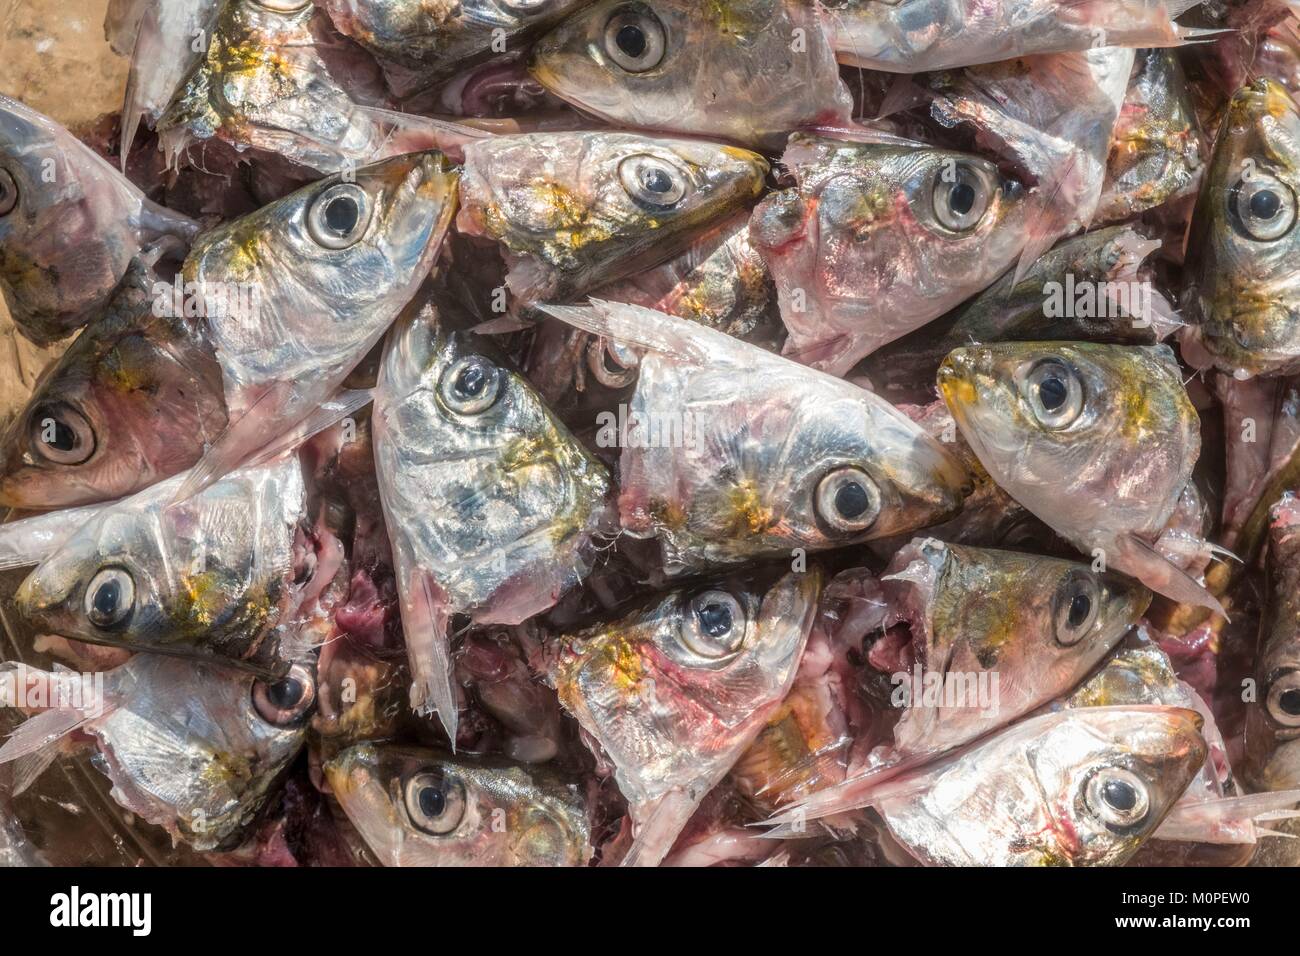 Risultato immagini per testa di sardina